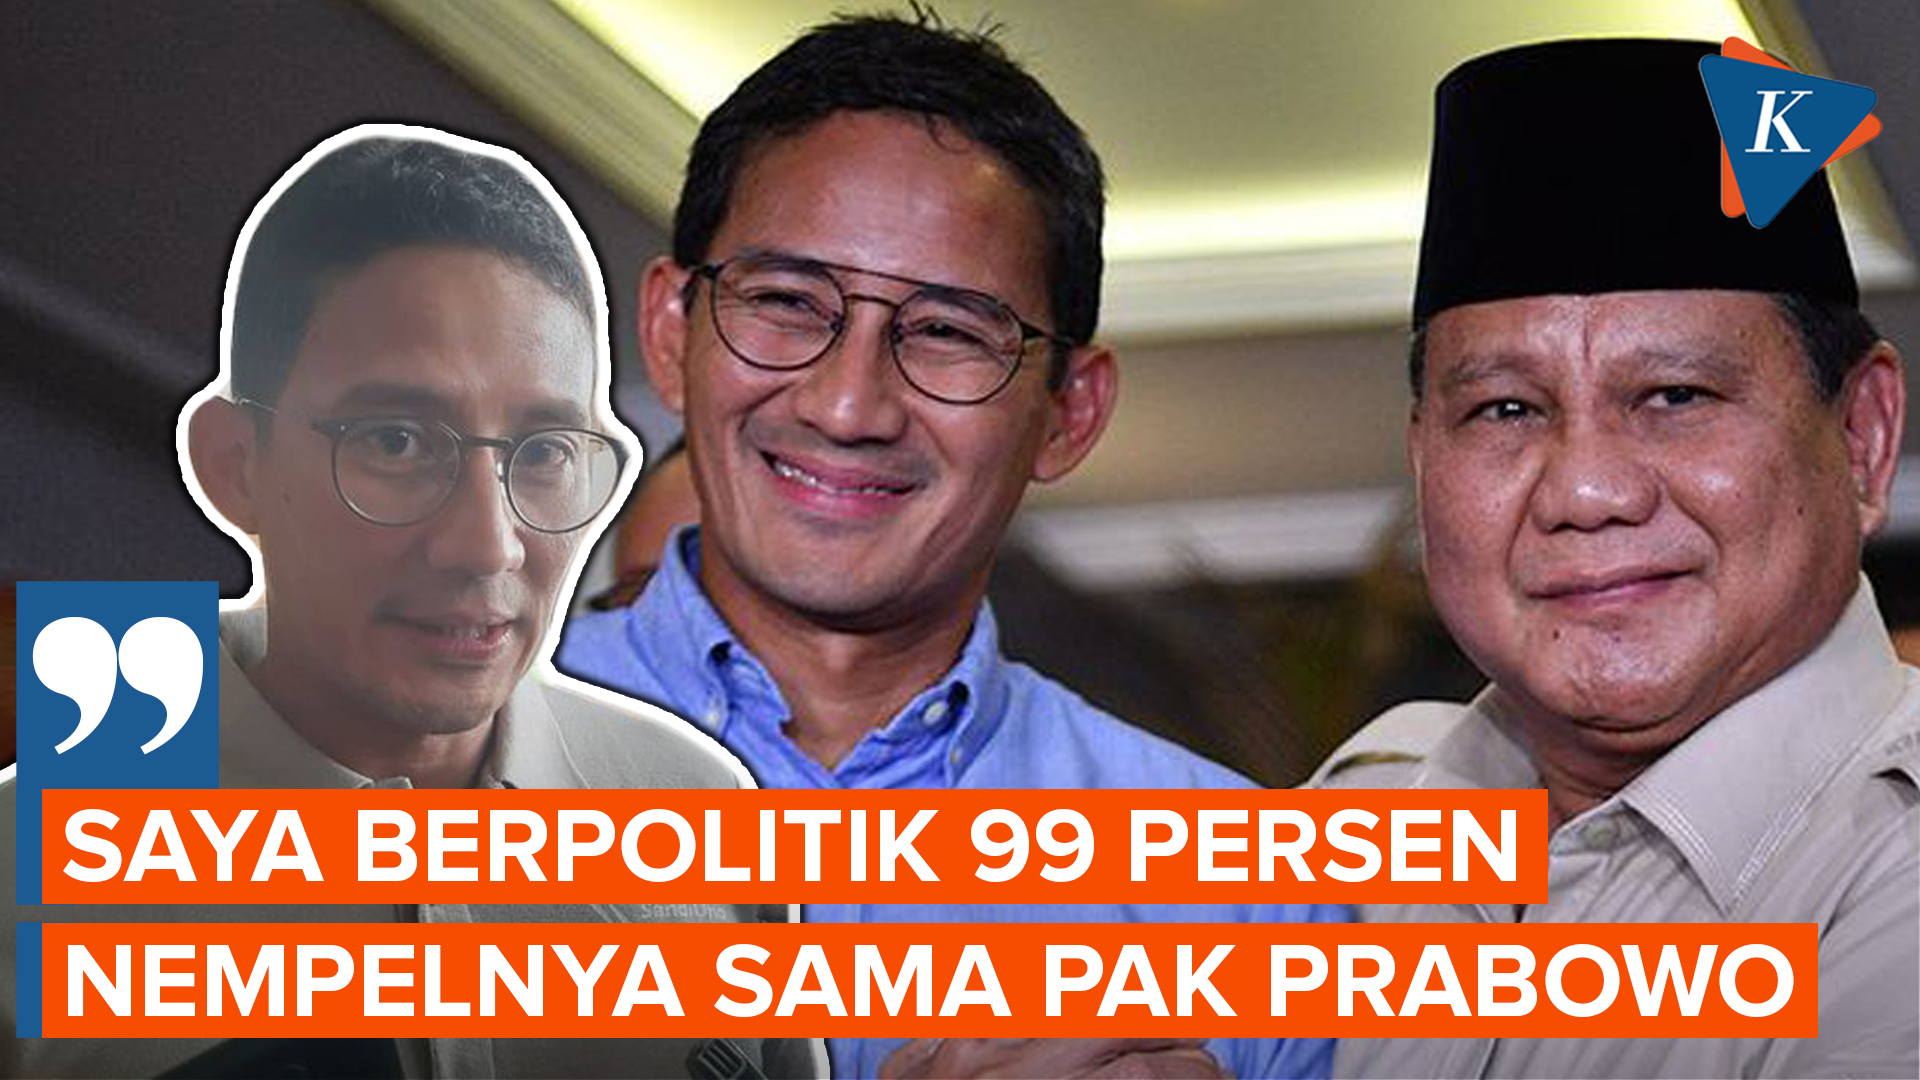 Tepis Isu Keretakan, Sandiaga Uno Sebut Karir Politiknya Menempel di Prabowo